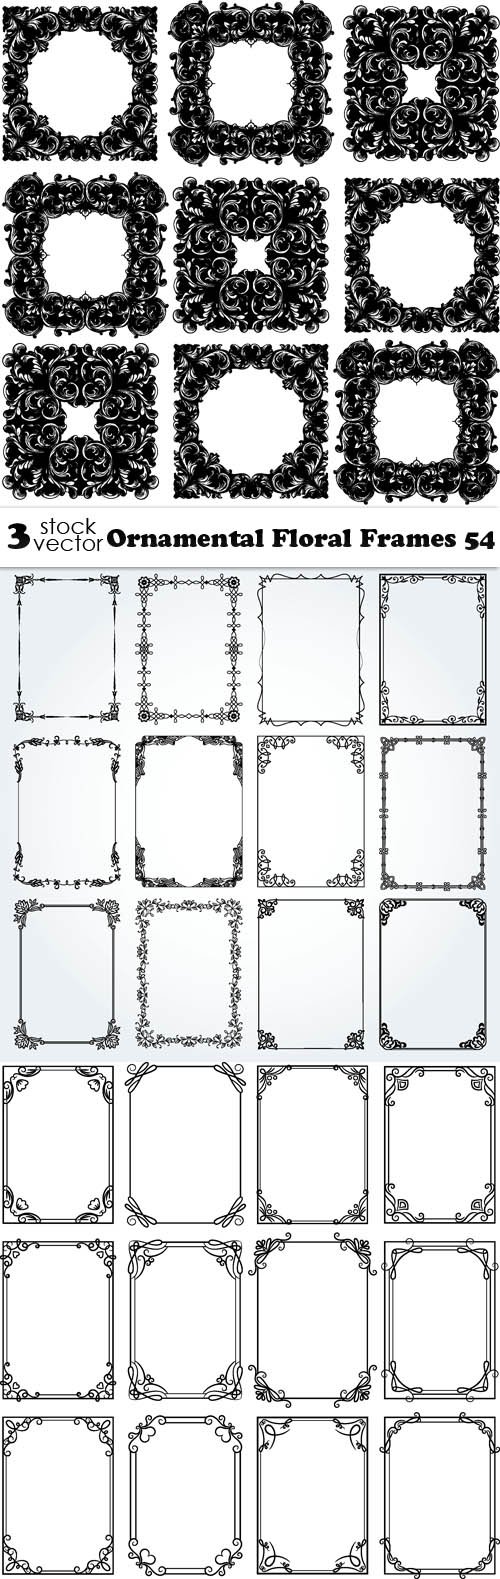 Vectors - Ornamental Floral Frames 54